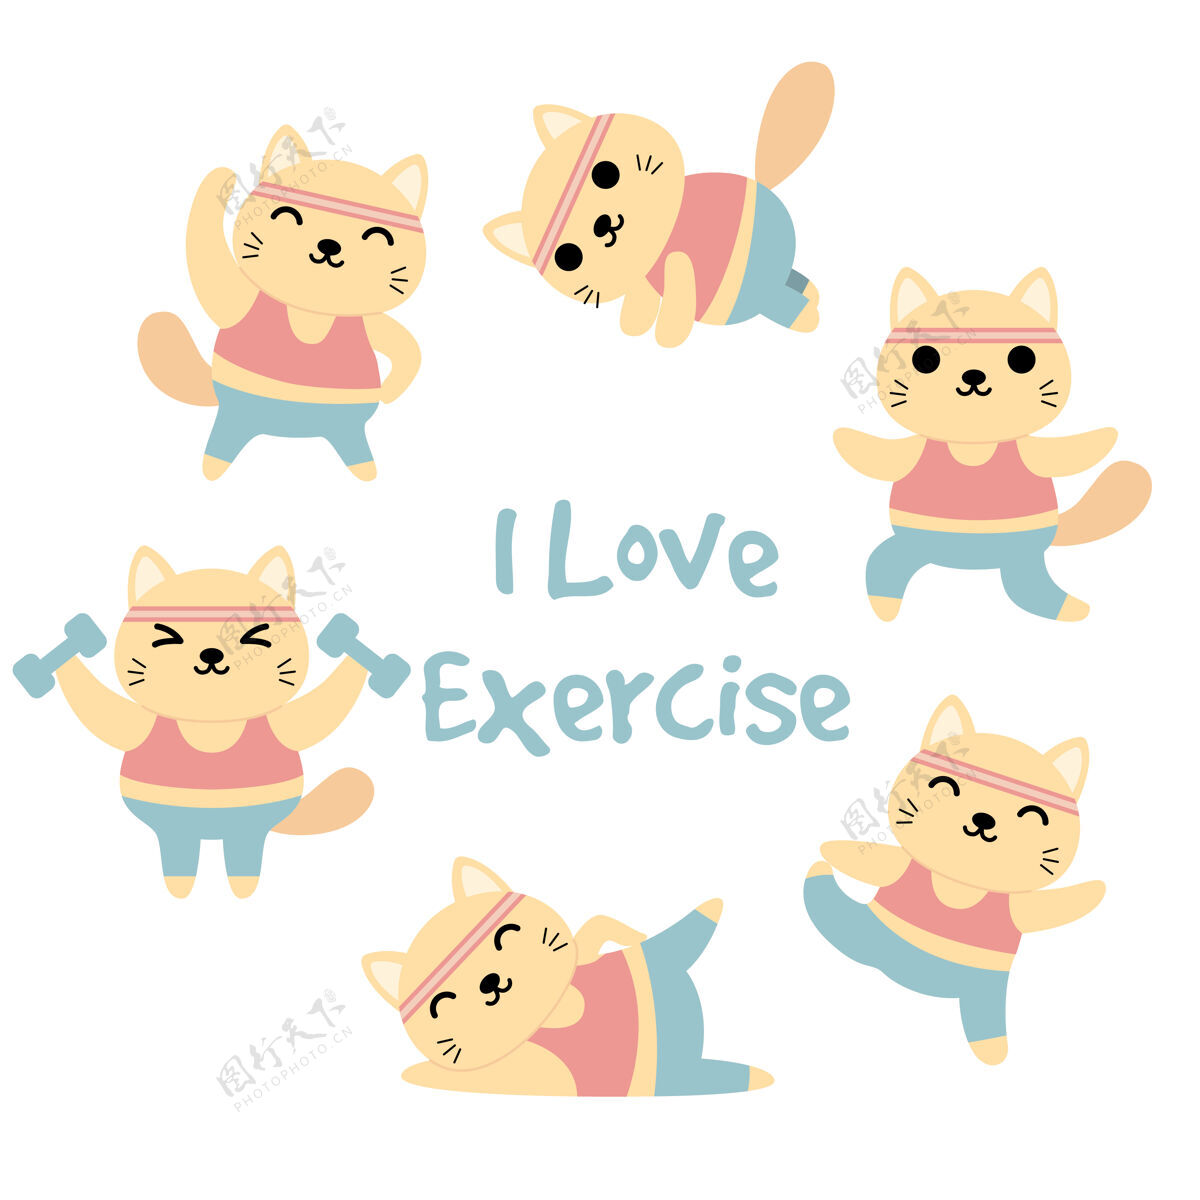 快乐一套有趣的猫做运动活动 体操 瑜伽 锻炼人物休闲快乐